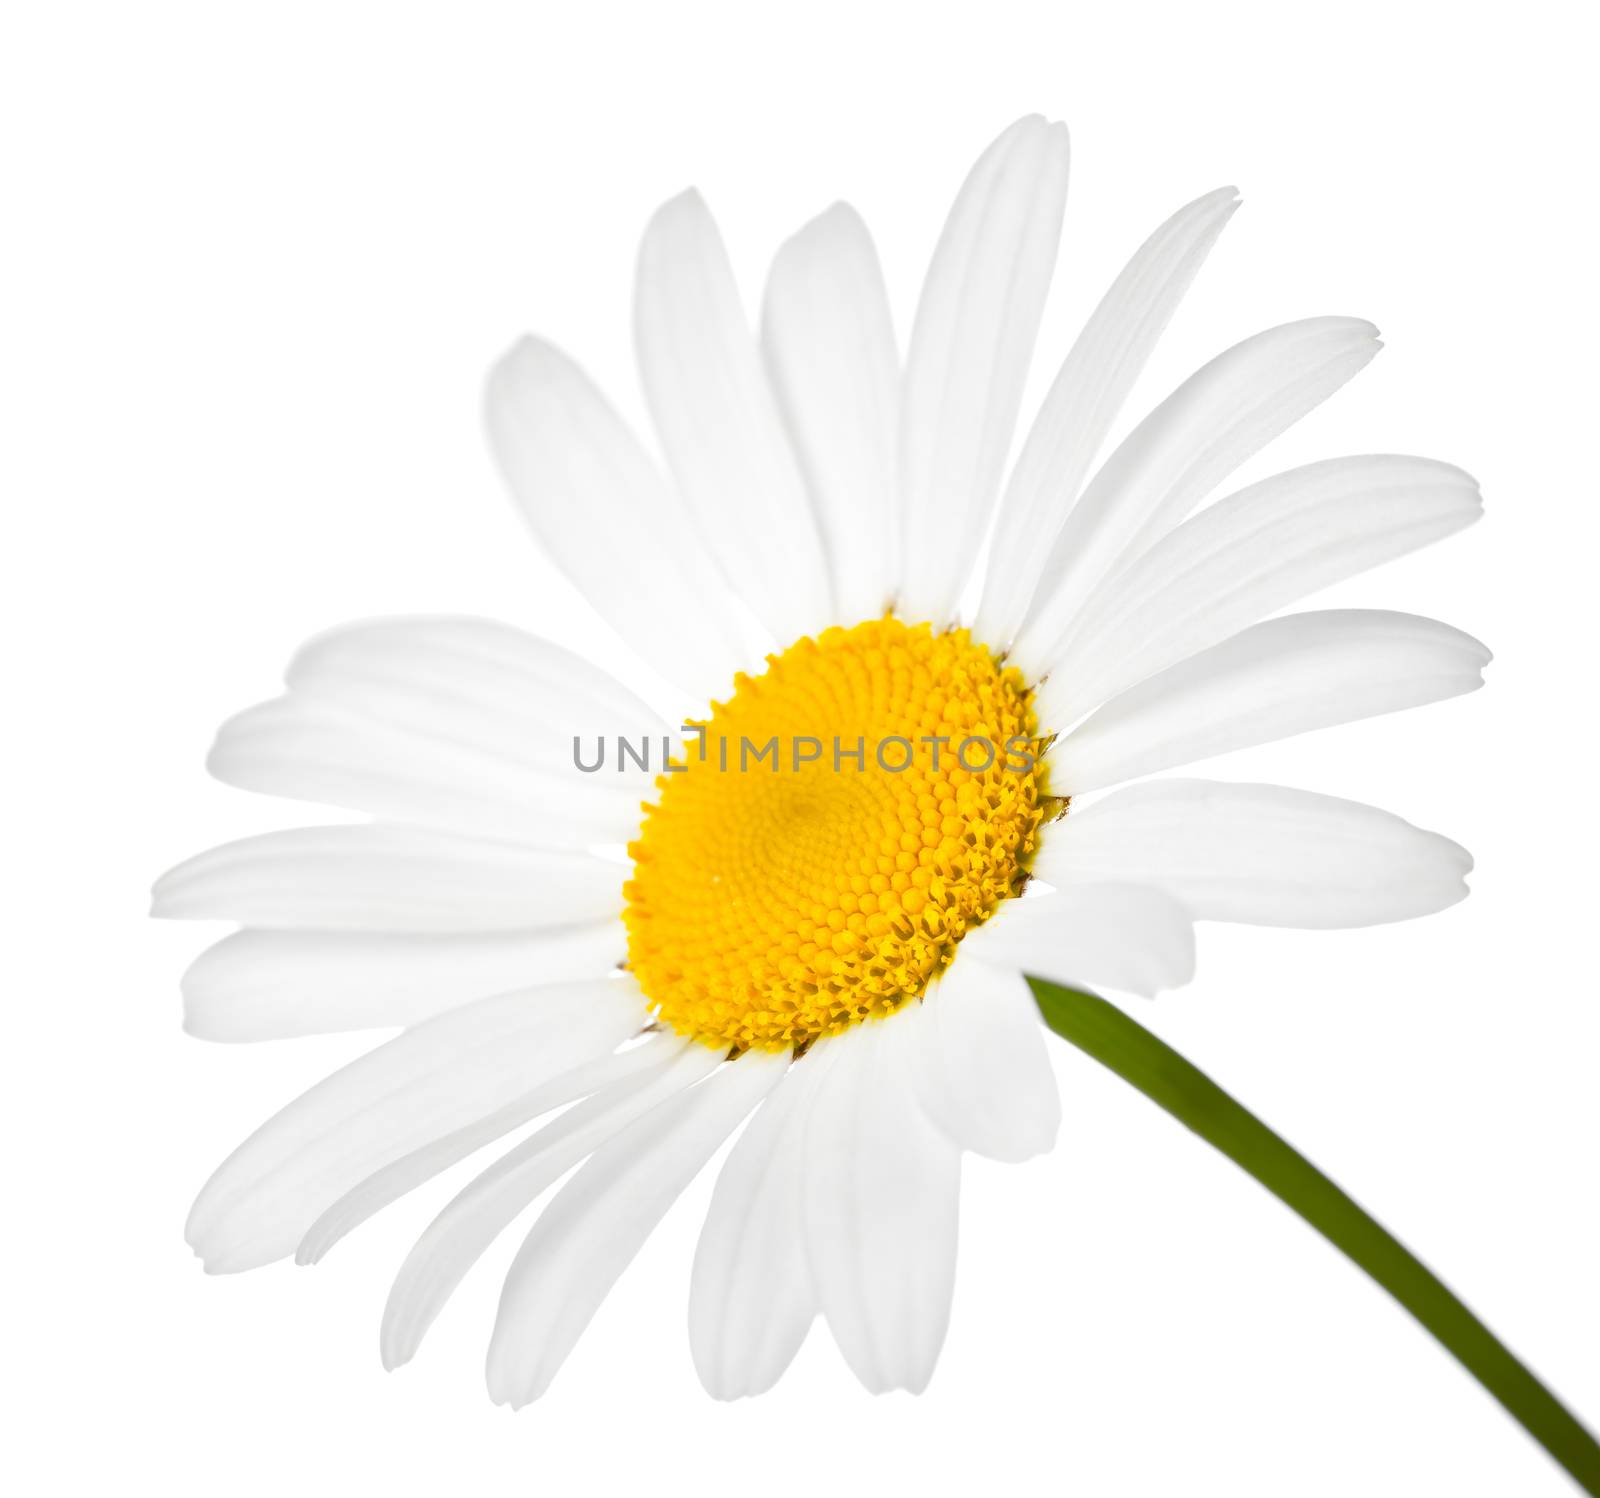 Chamomile flower isolated on white background. Macro shot